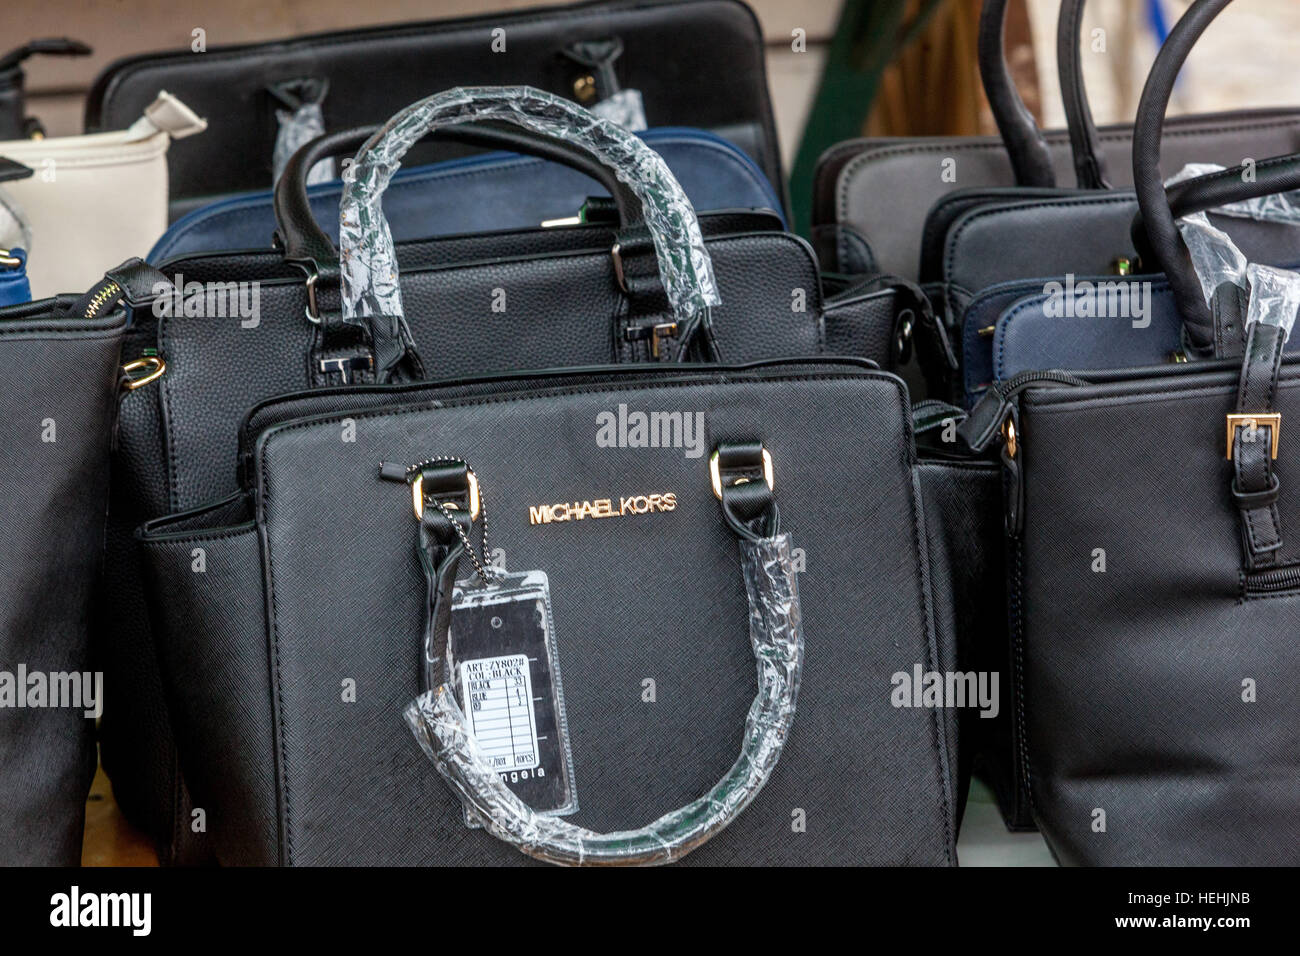 La vente de faux sacs à mains marque de renom Michael Kors, marché,  Holesovice, Prague, République Tchèque Photo Stock - Alamy